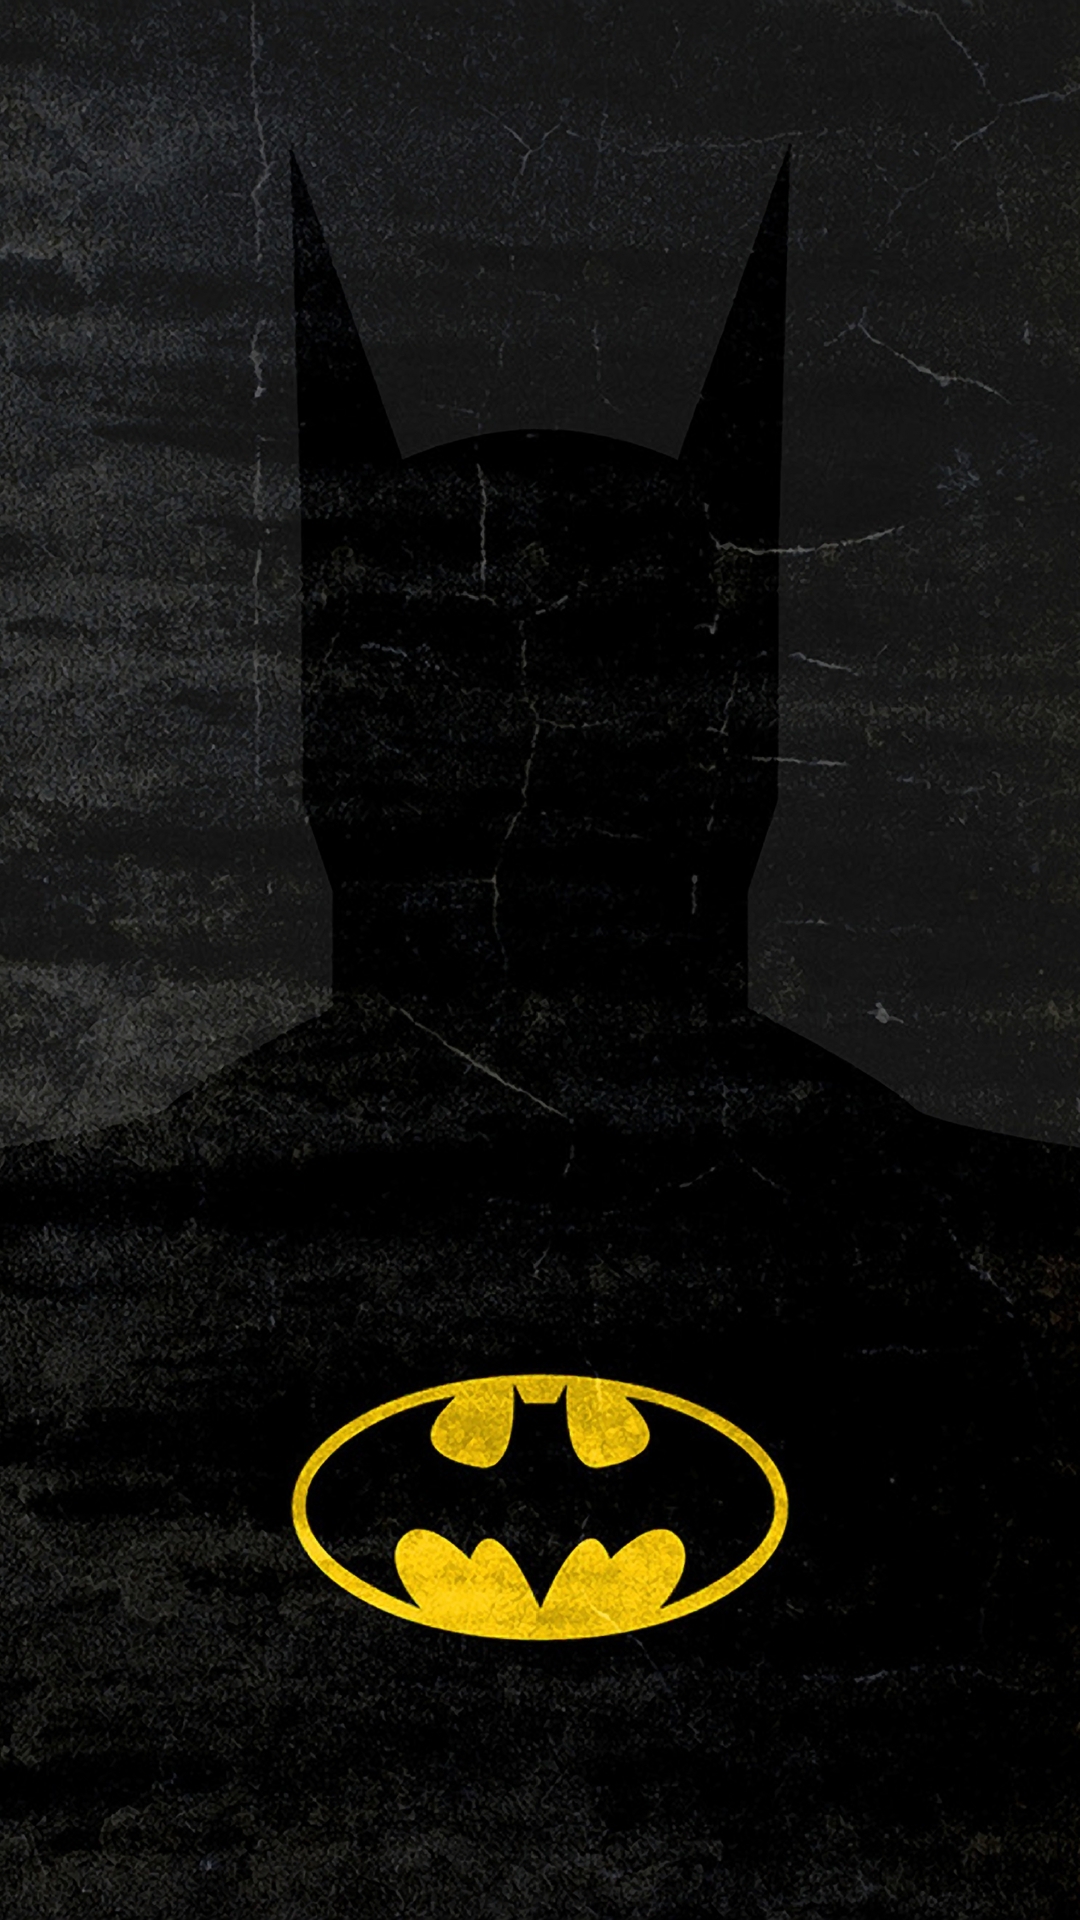 The Batman Wallpaper Download  MOONAZ